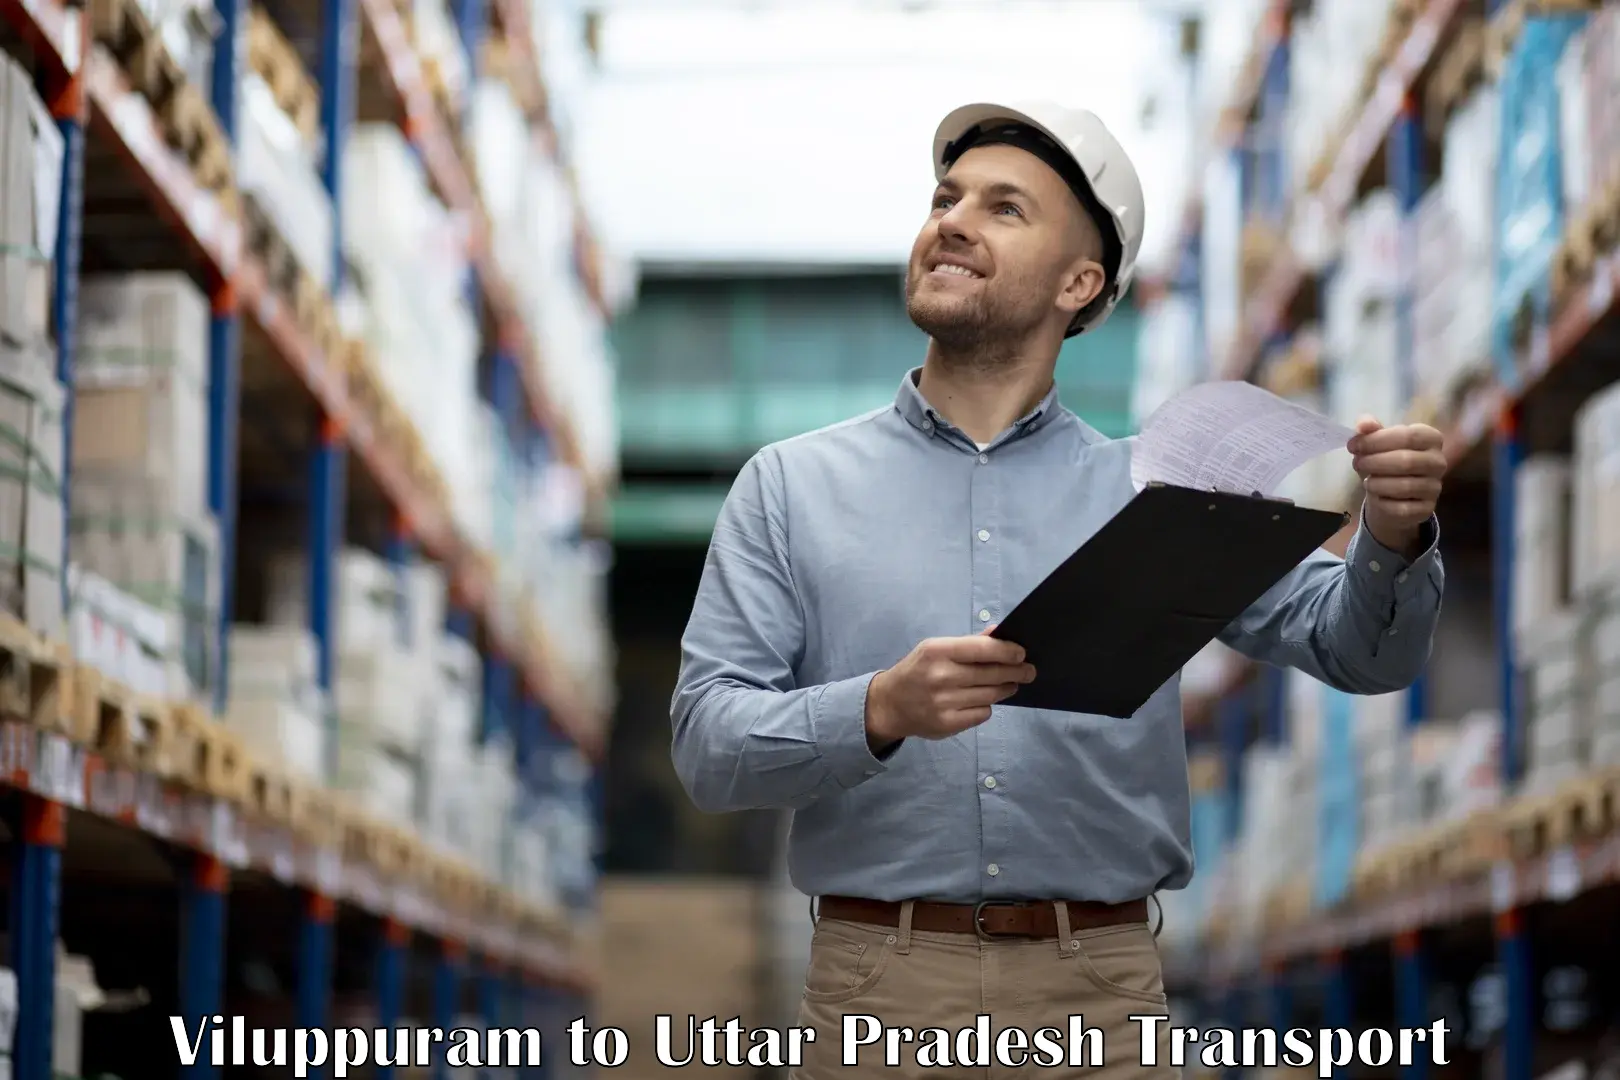 Transport in sharing in Viluppuram to Uttar Pradesh